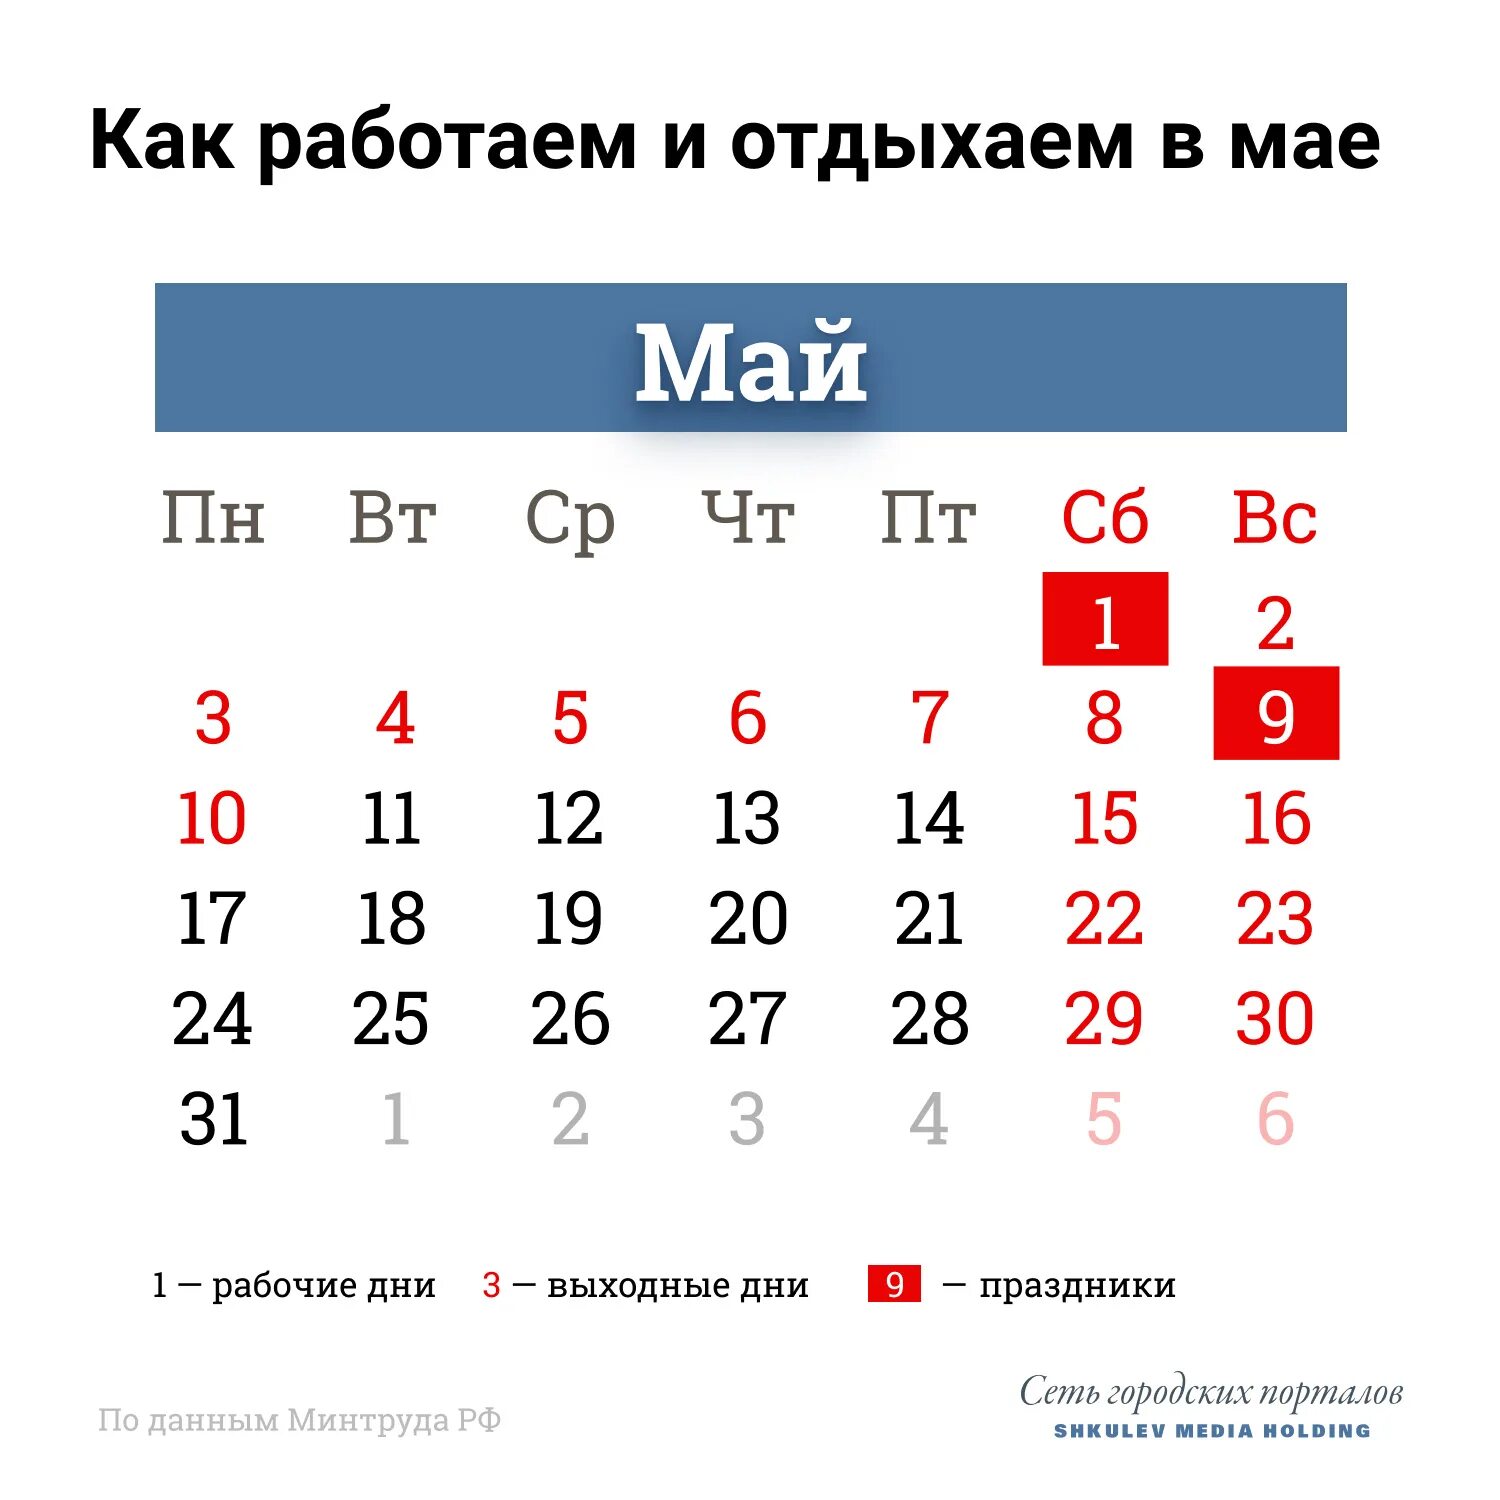 Выходные дни в мае в крыму. Праздничные дни в мае 2021 года в России. Выходные в мае. Майсеип праздник календарь. Майские праздники rfktylfh,.